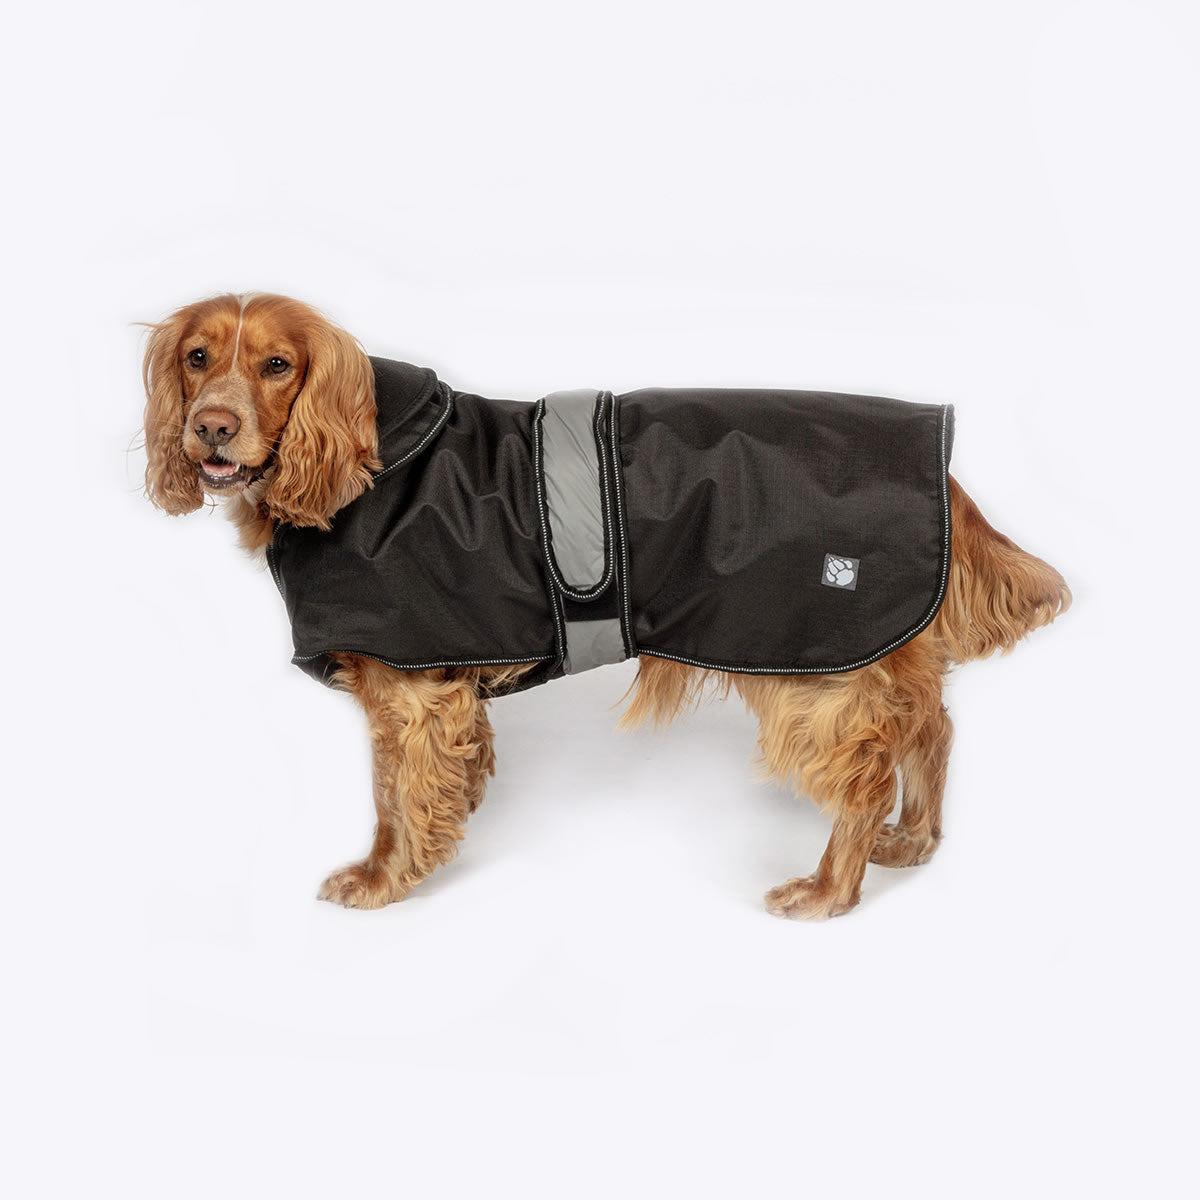 Danish Design - The Ultimate 2 in 1 Waterproof and Fleece Dog Coat - Black-Danish Design-Love My Hound